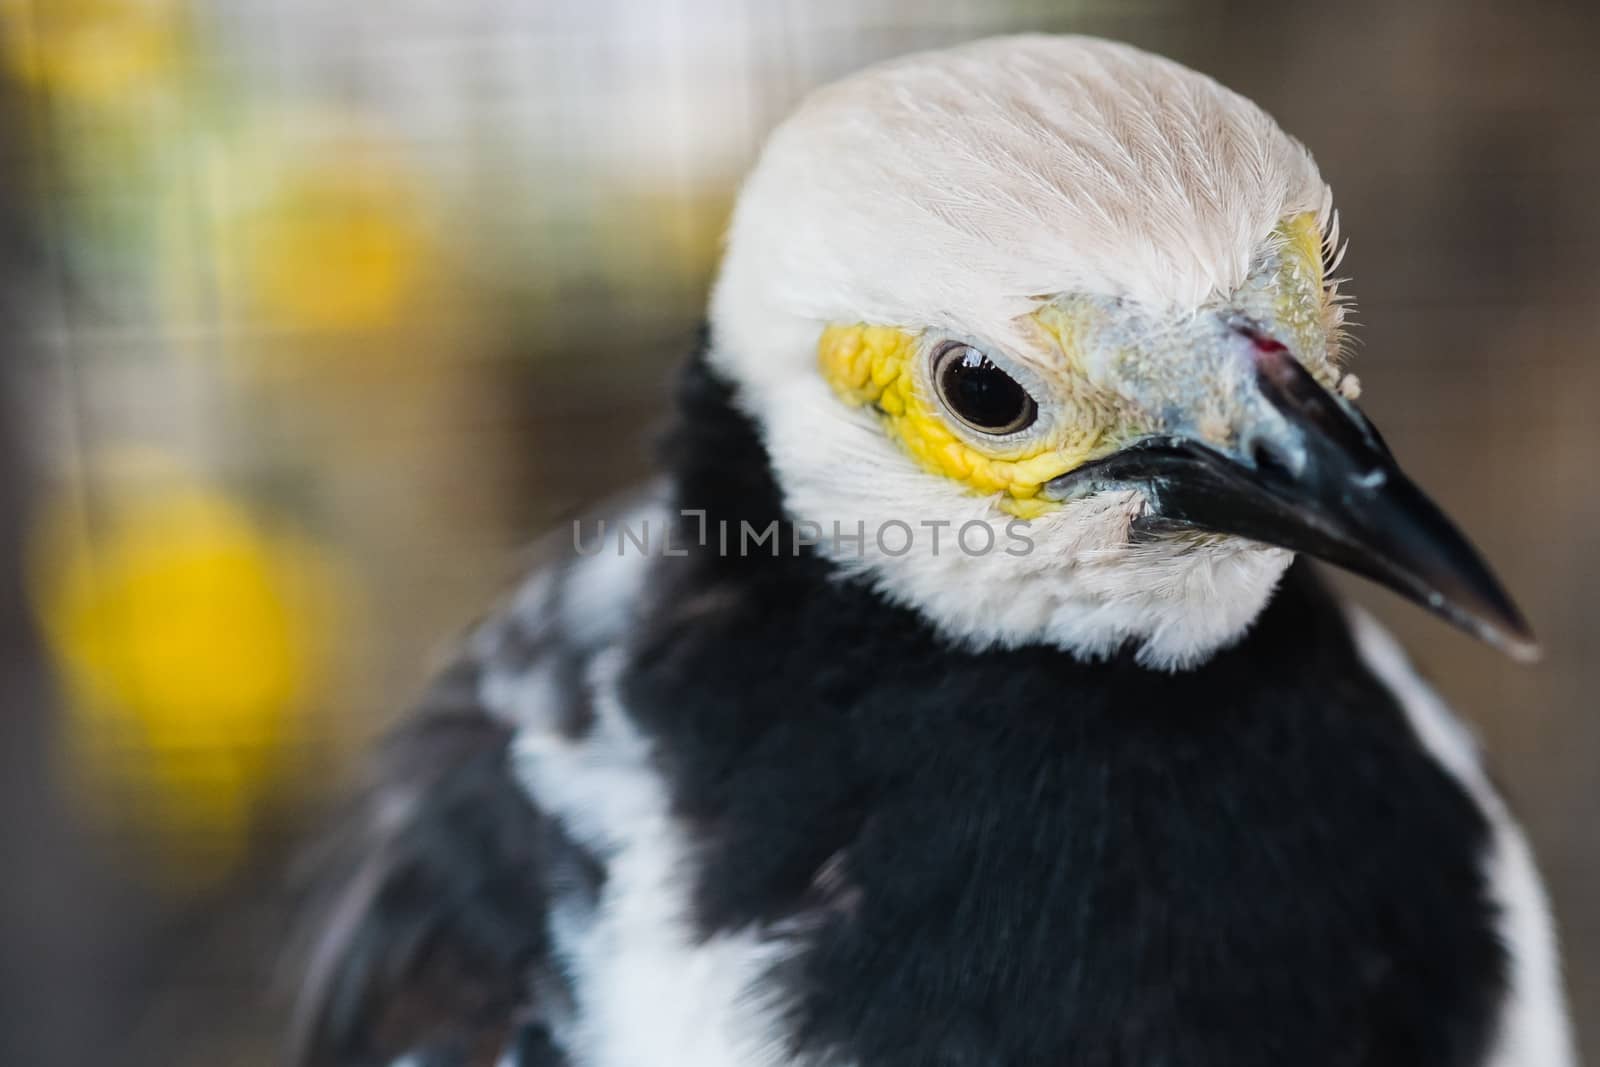 eye of bird with blur background